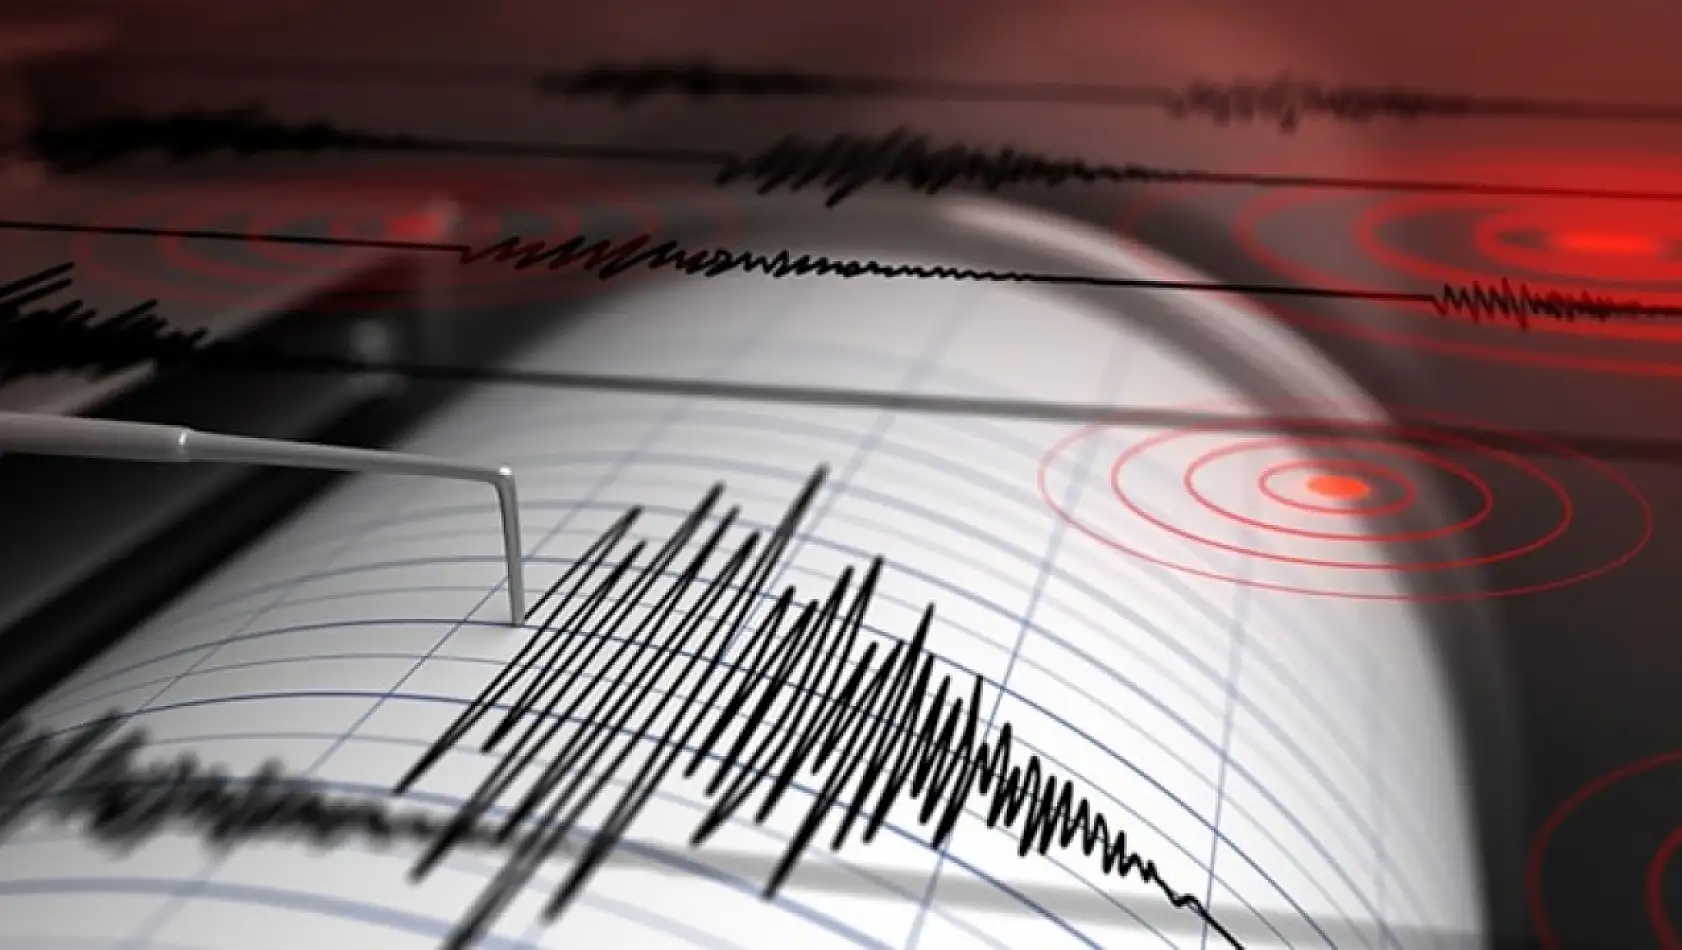 SON DAKİKA! 4.2 büyüklüğünde korkutan deprem